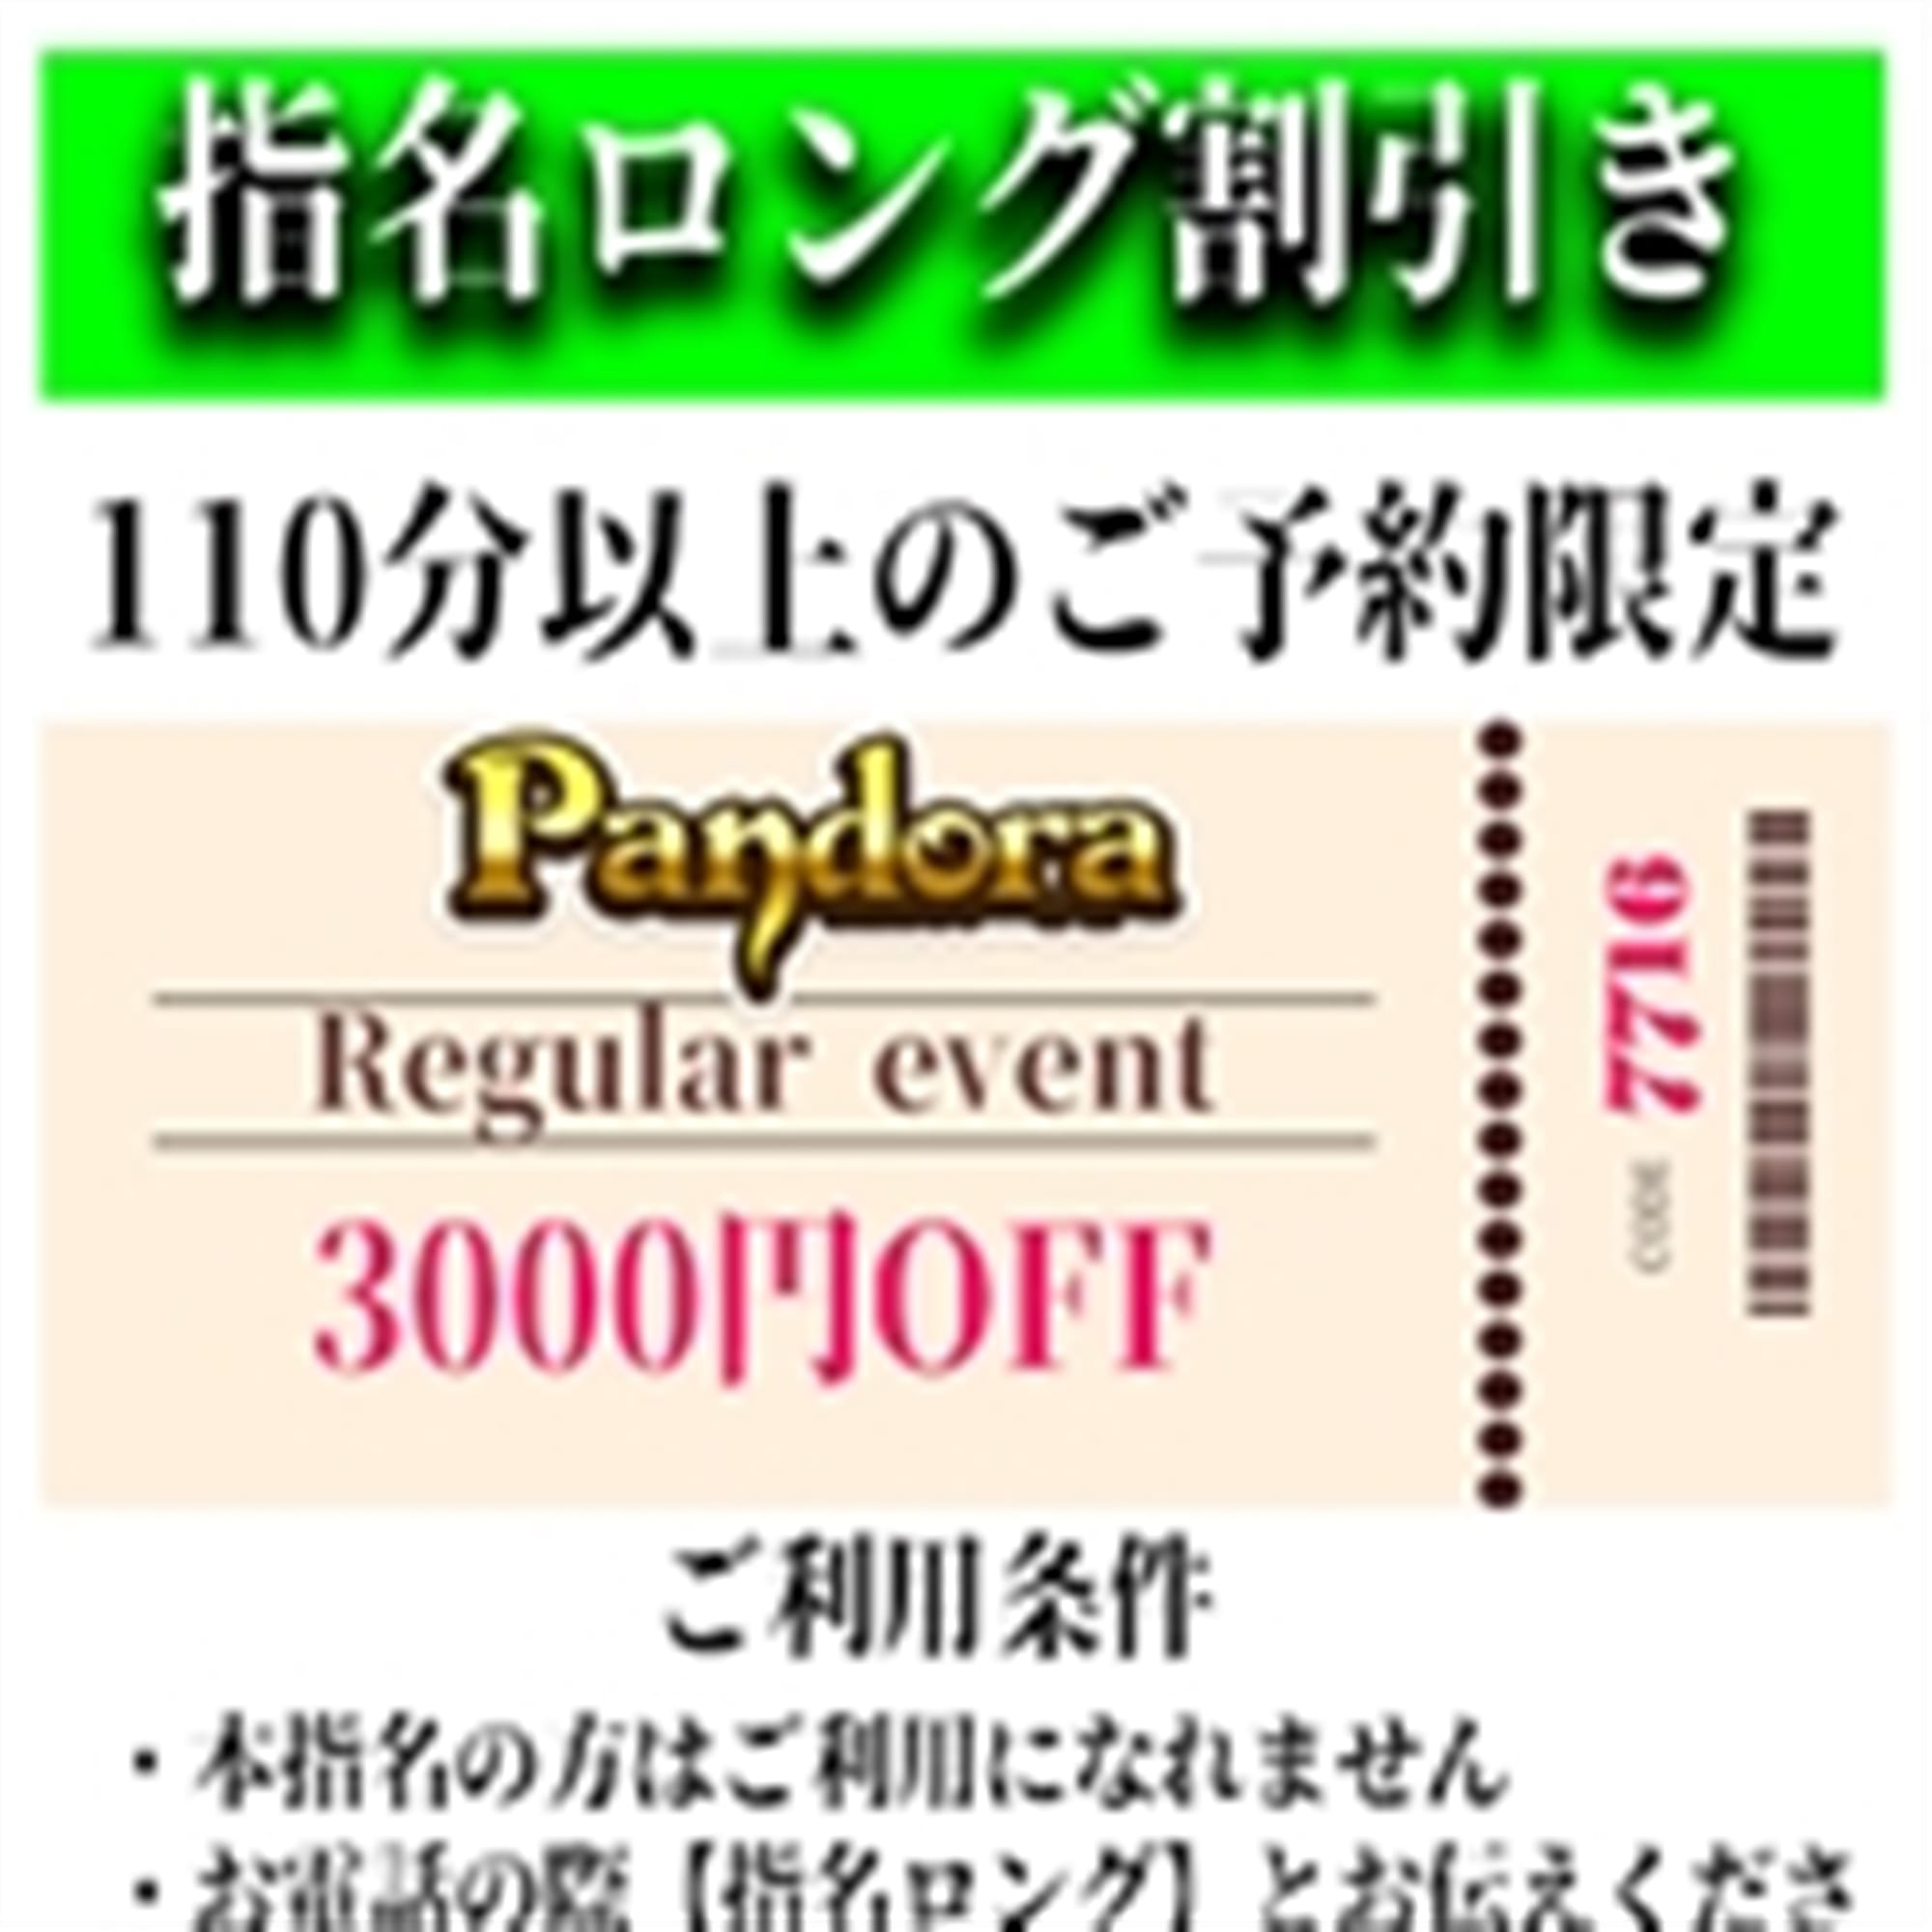 「ご指名のお客様も遊べるロングコース割引」03/28(木) 18:33 | Pandora(パンドラ)新潟のお得なニュース